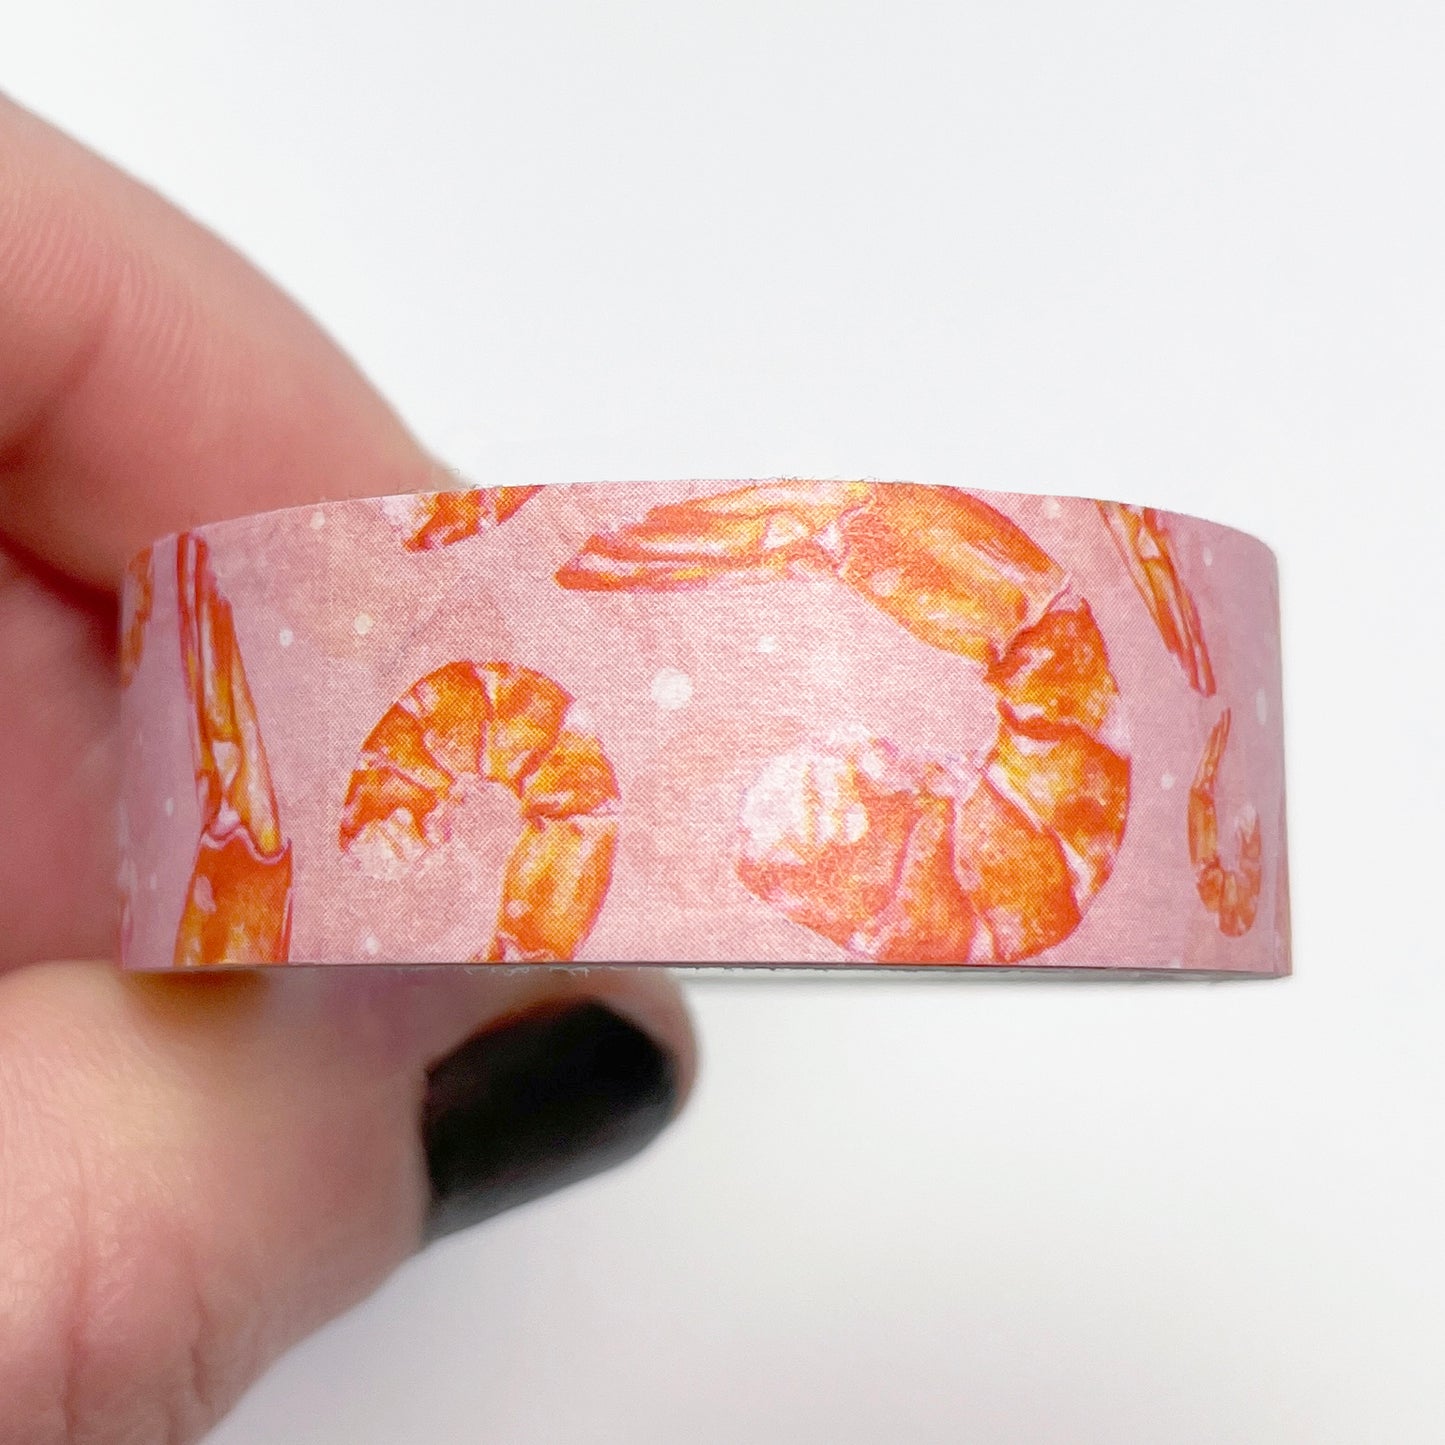 Shrimp Washi Tape